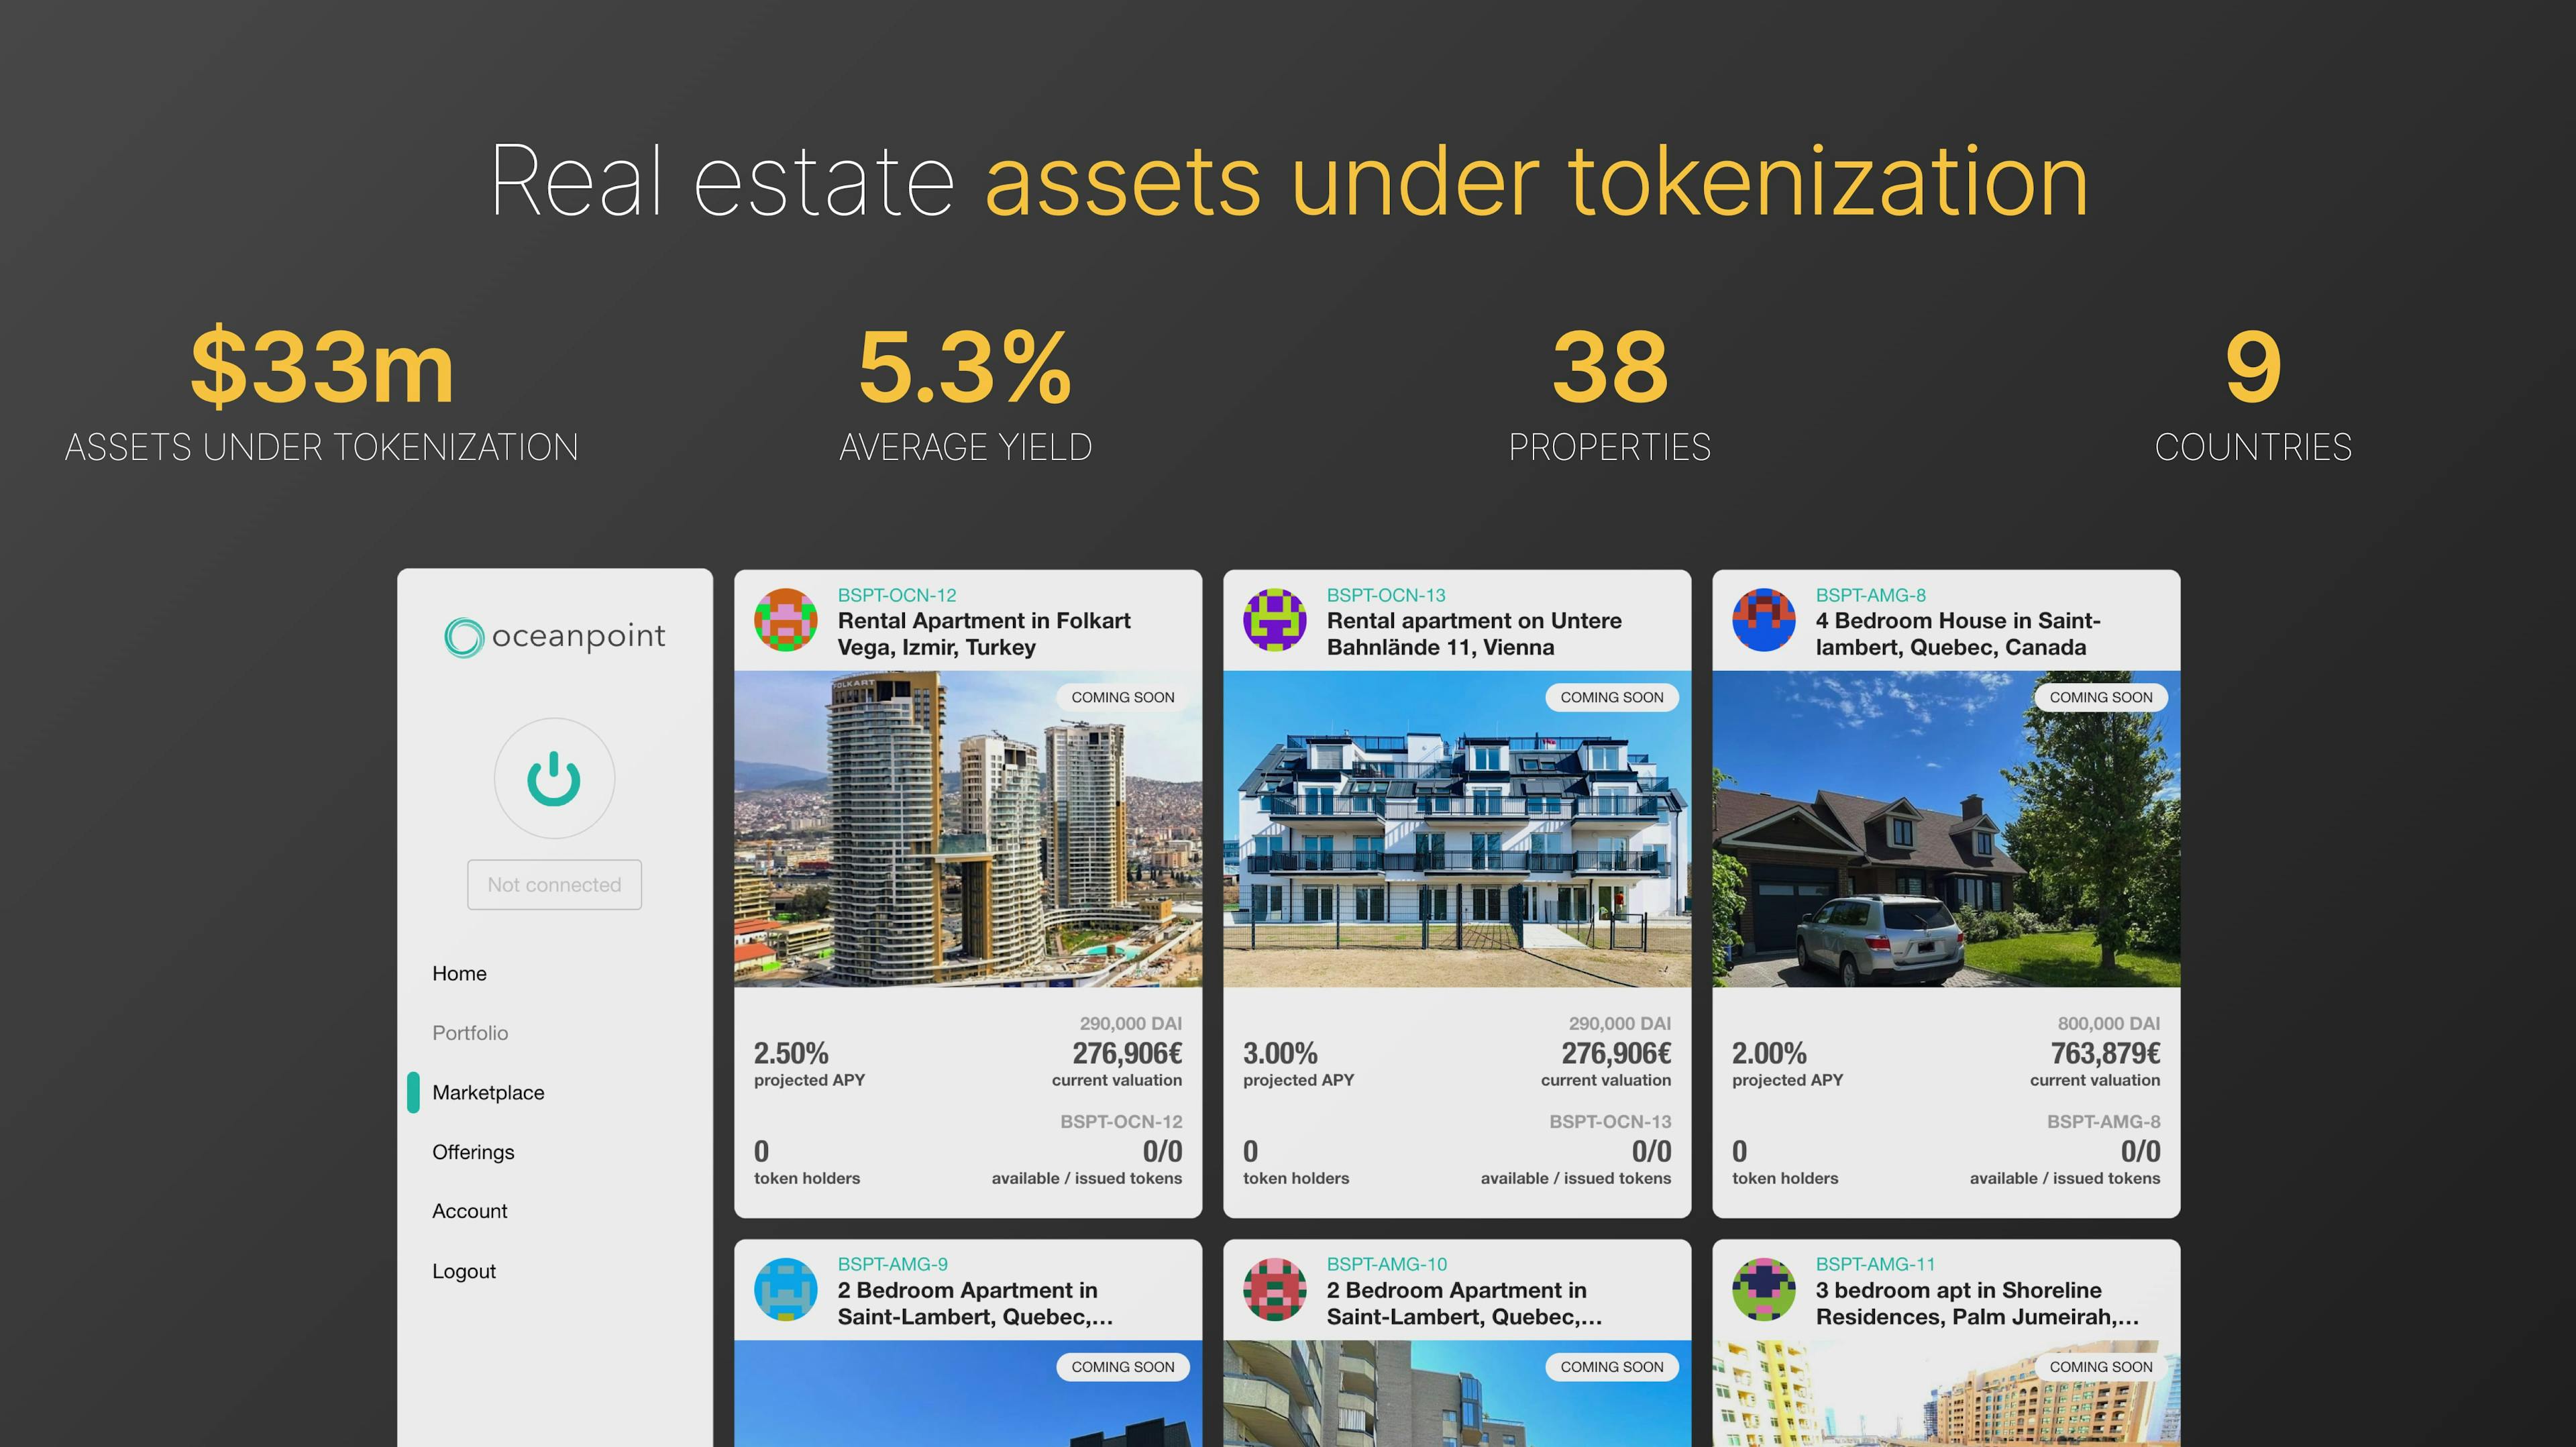 Real estate assets under tokenization